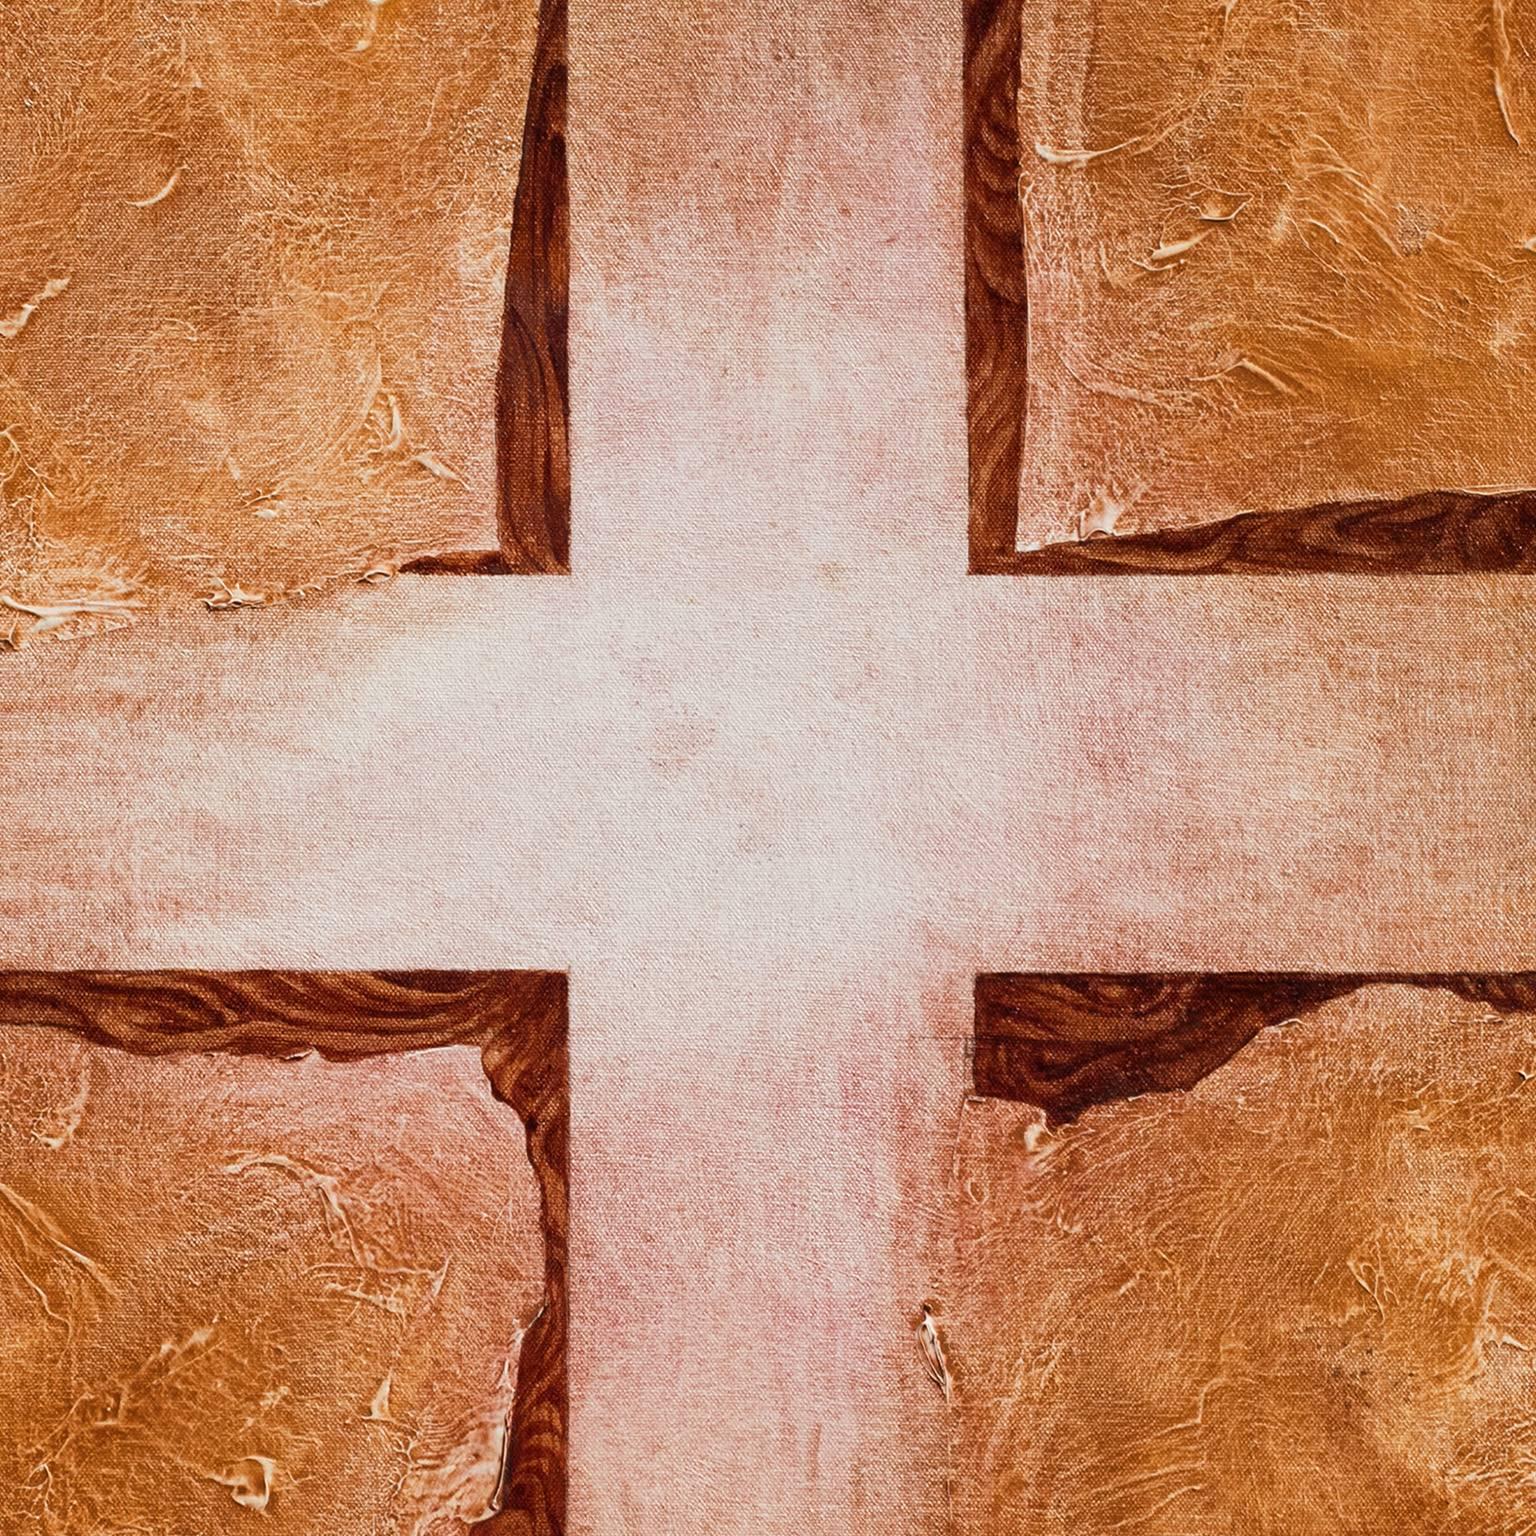 paintings of crosses